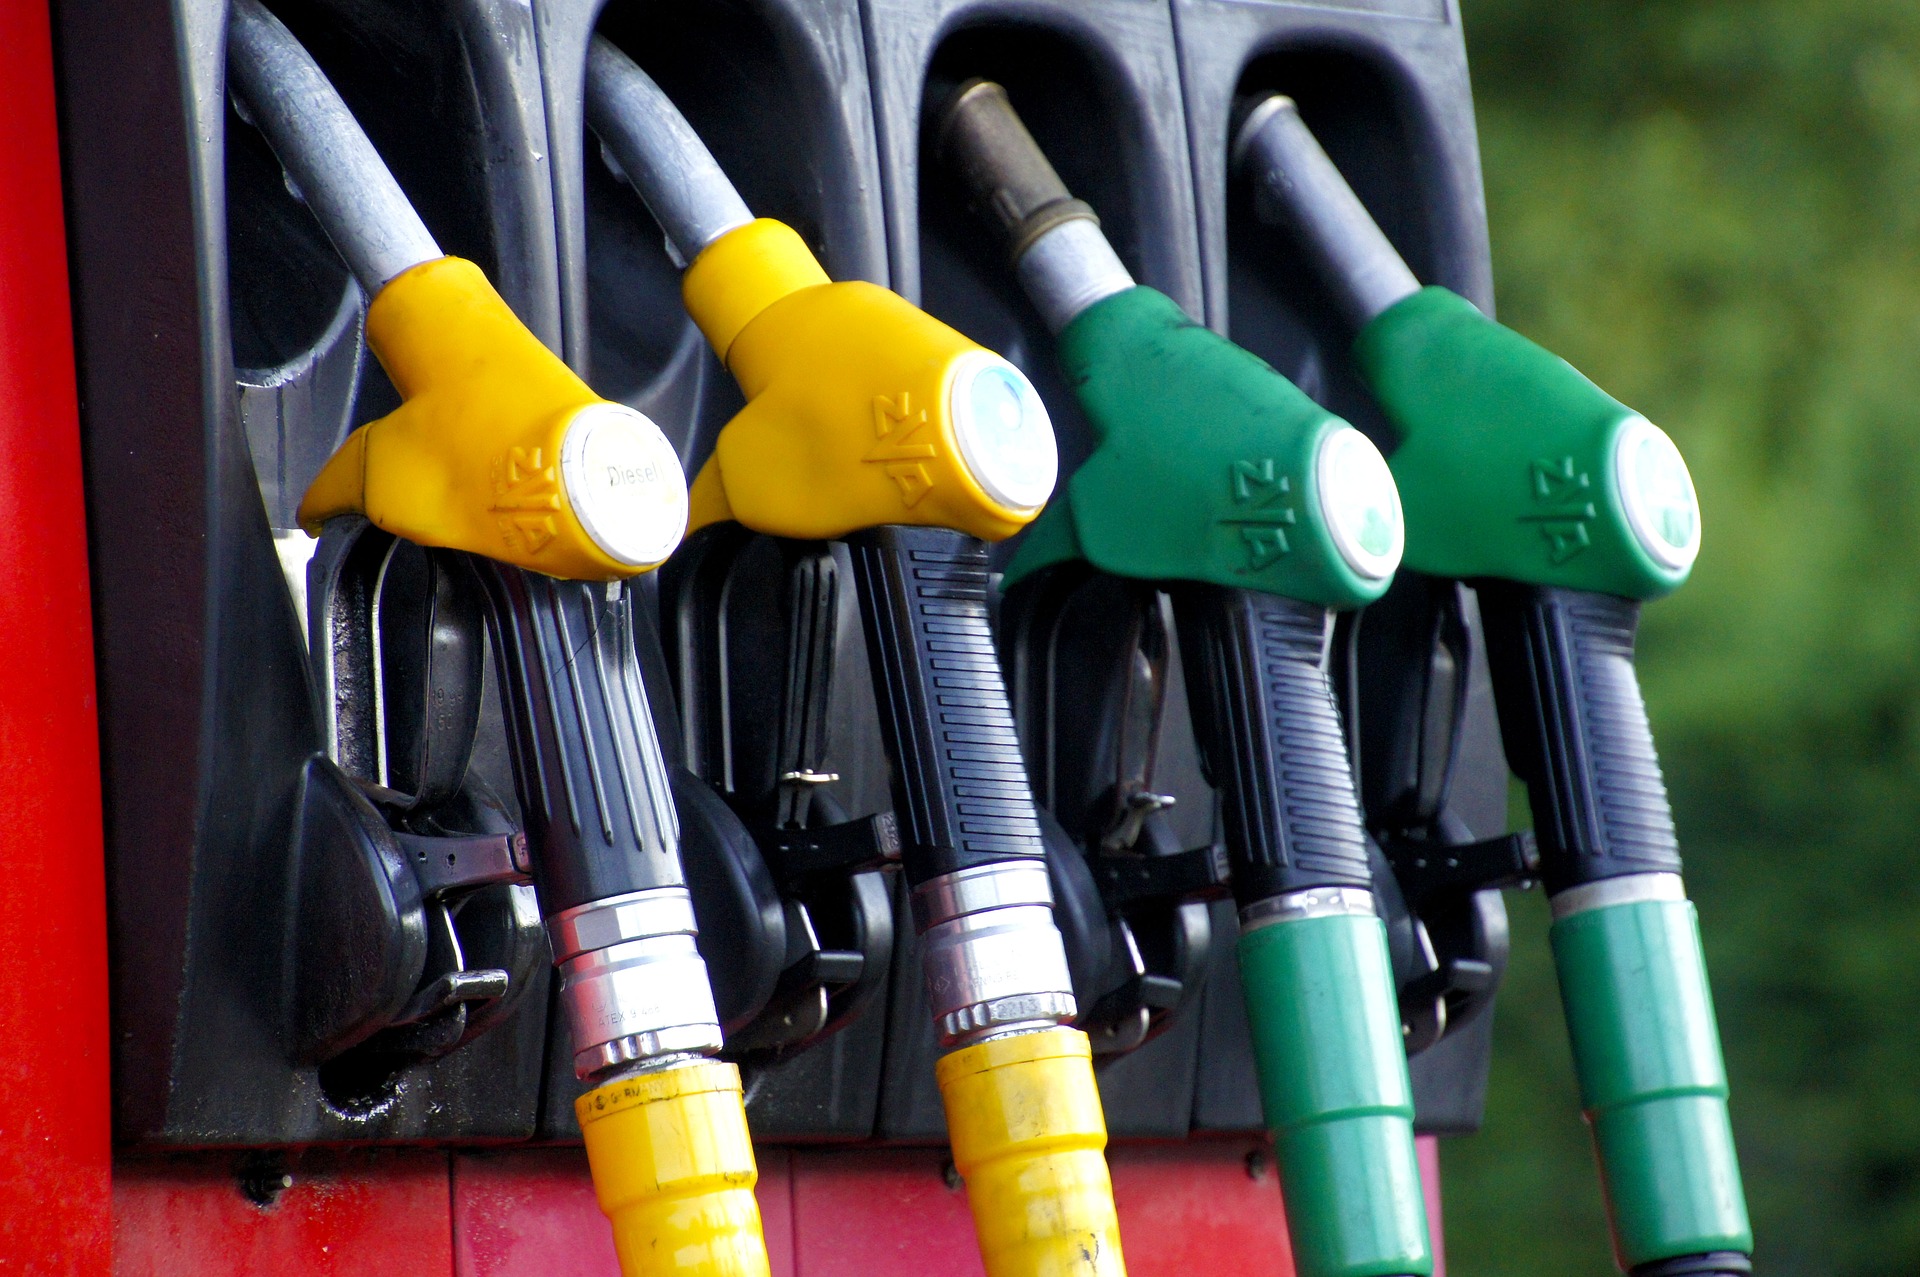 Benzinăriile care au majorat artificial prețul vor rămâne fără veniturile obținute astfel. ANPC: Măsura e mai dură ca amenda